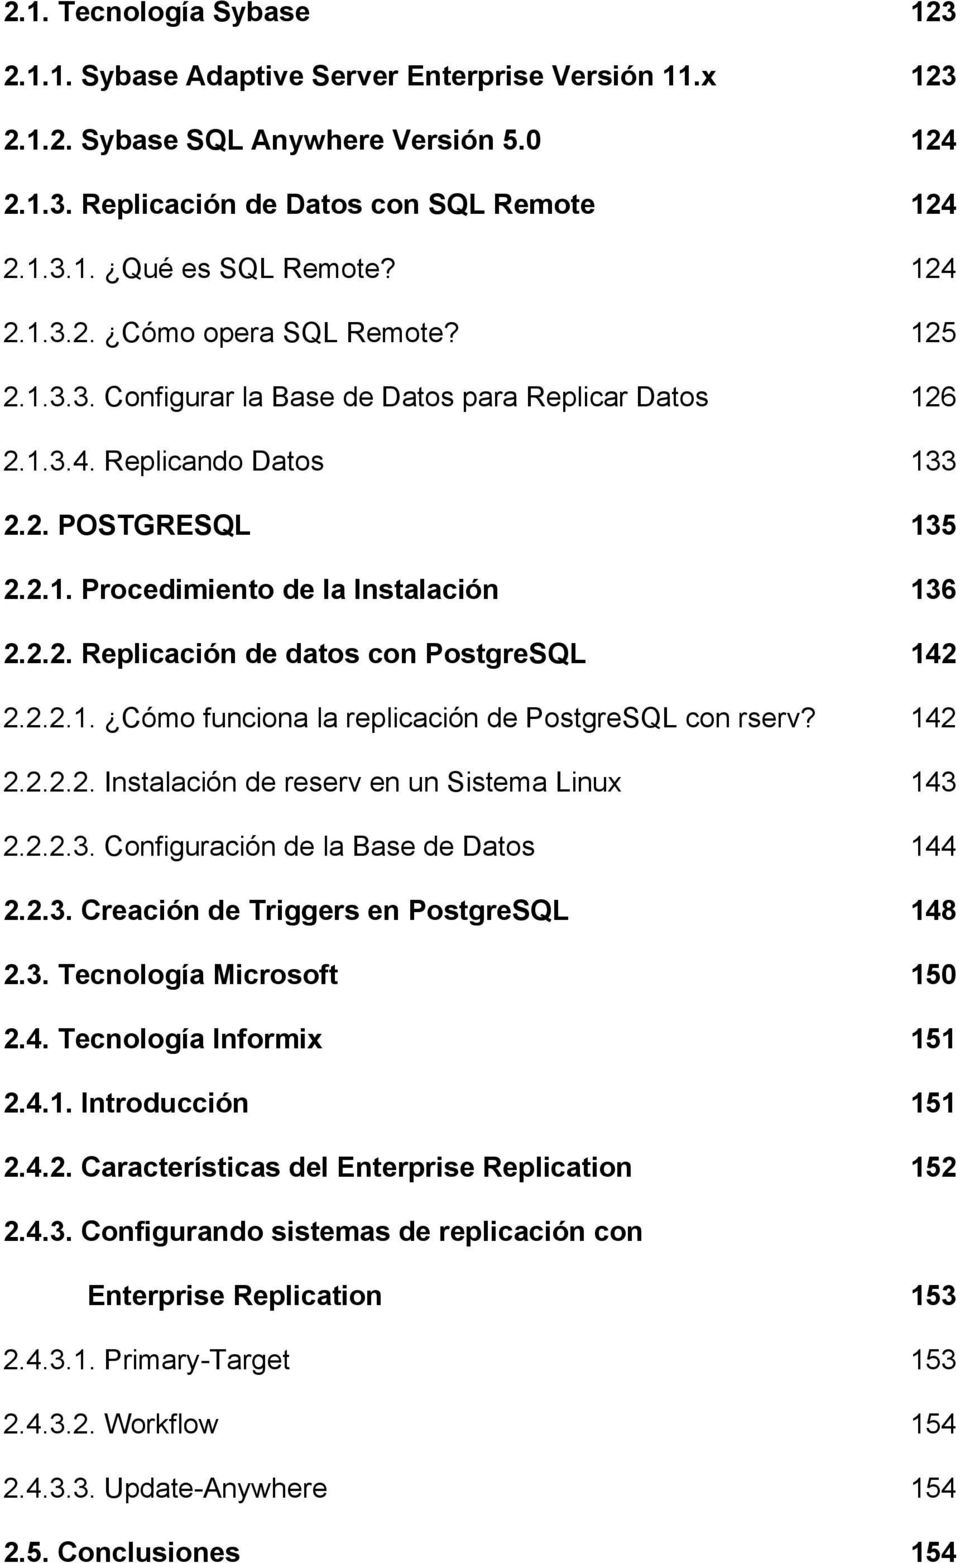 2.2.1. Cómo funciona la replicación de PostgreSQL con rserv? 142 2.2.2.2. Instalación de reserv en un Sistema Linux 143 2.2.2.3. Configuración de la Base de Datos 144 2.2.3. Creación de Triggers en PostgreSQL 148 2.